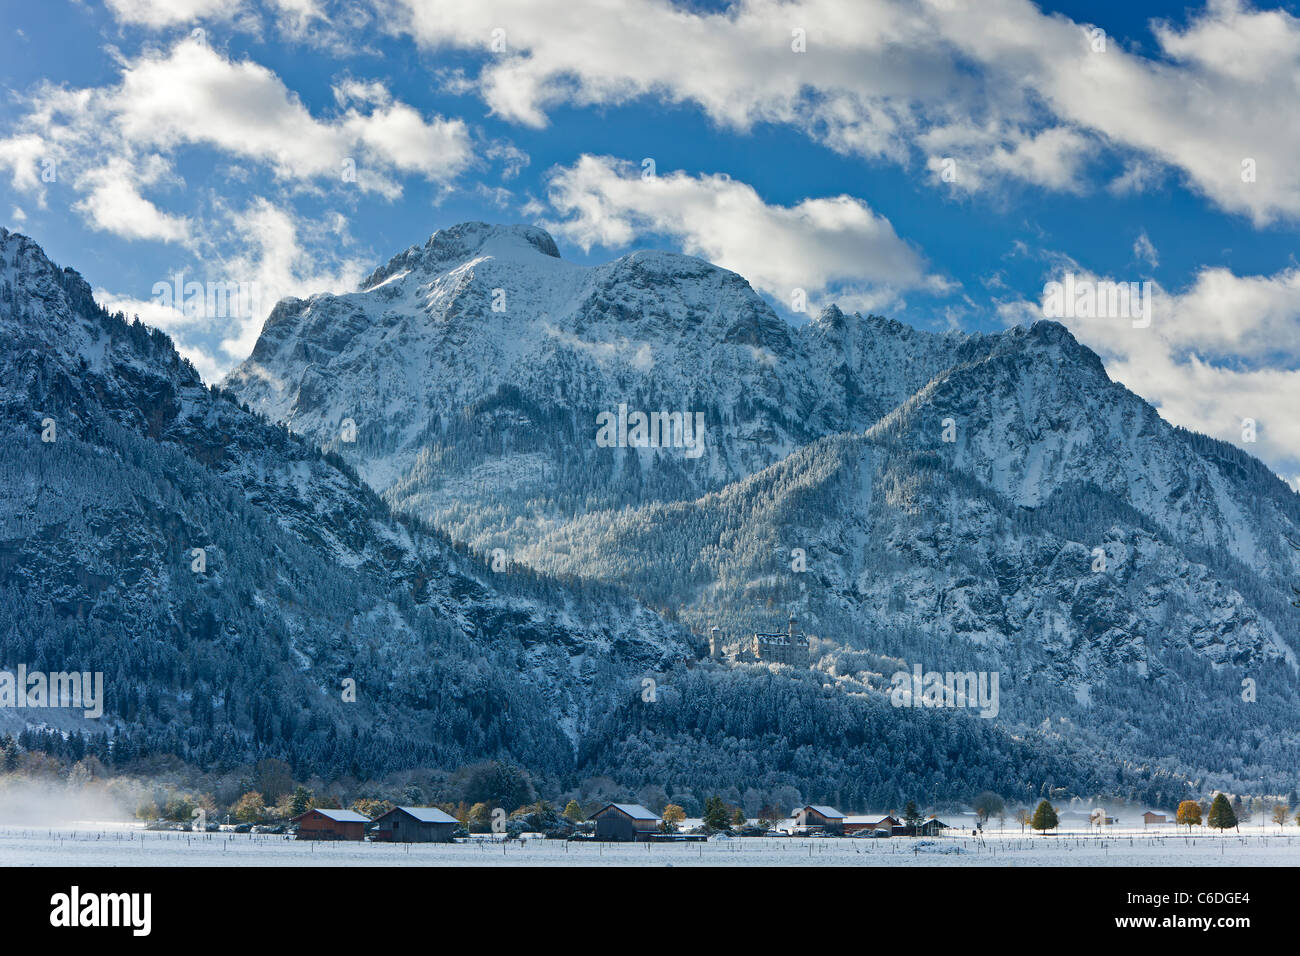 Allemagne, Bavière, Oberbayern, montagnes enneigées entourant le château de Neuschwanstein Banque D'Images